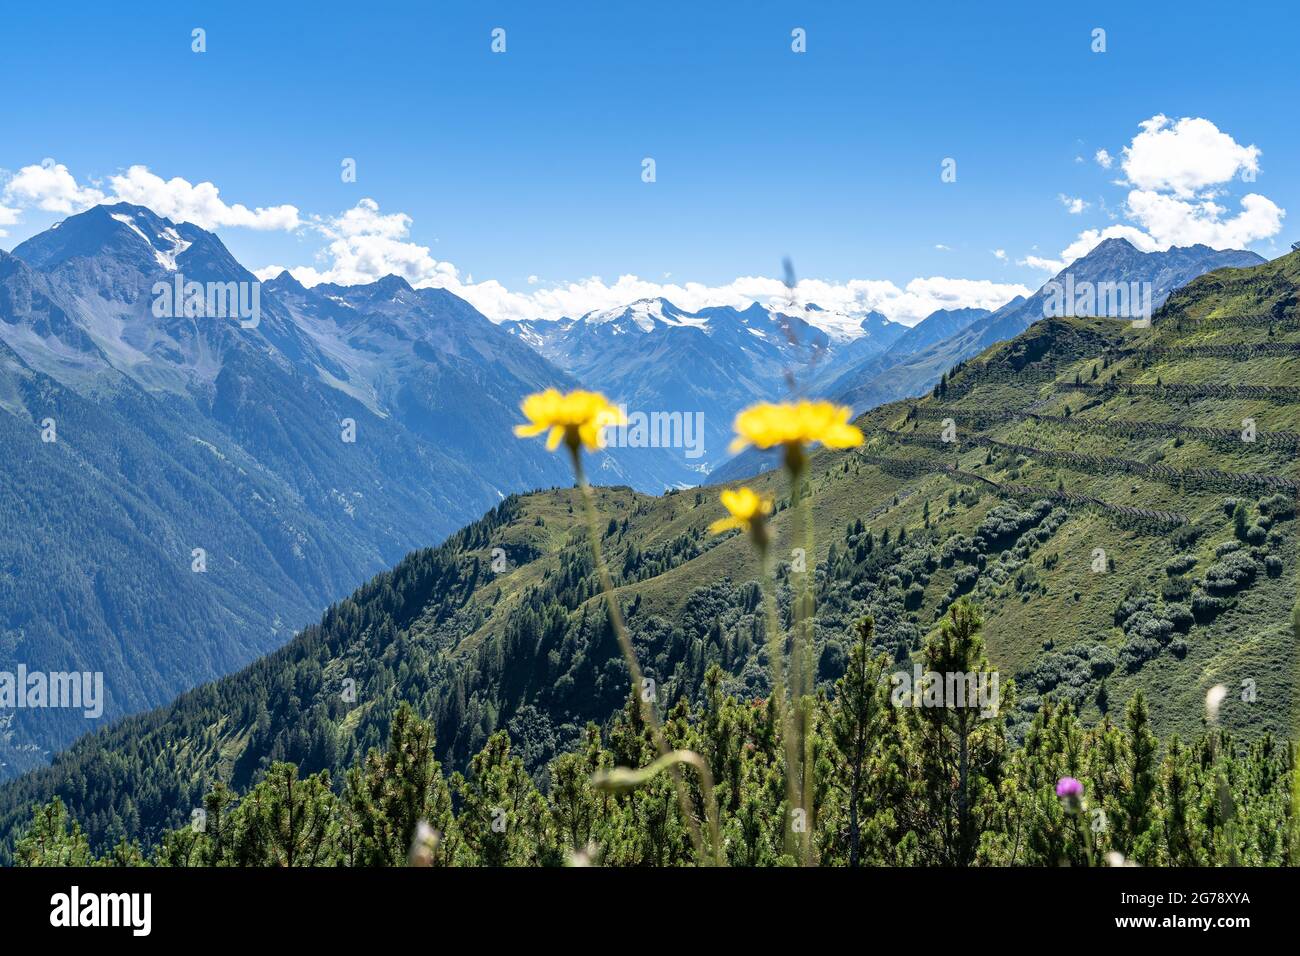 Europe, Autriche, Tyrol, Alpes de Stubai, vue sur la vallée de Stubai avec Habicht et le glacier de Stubai Banque D'Images